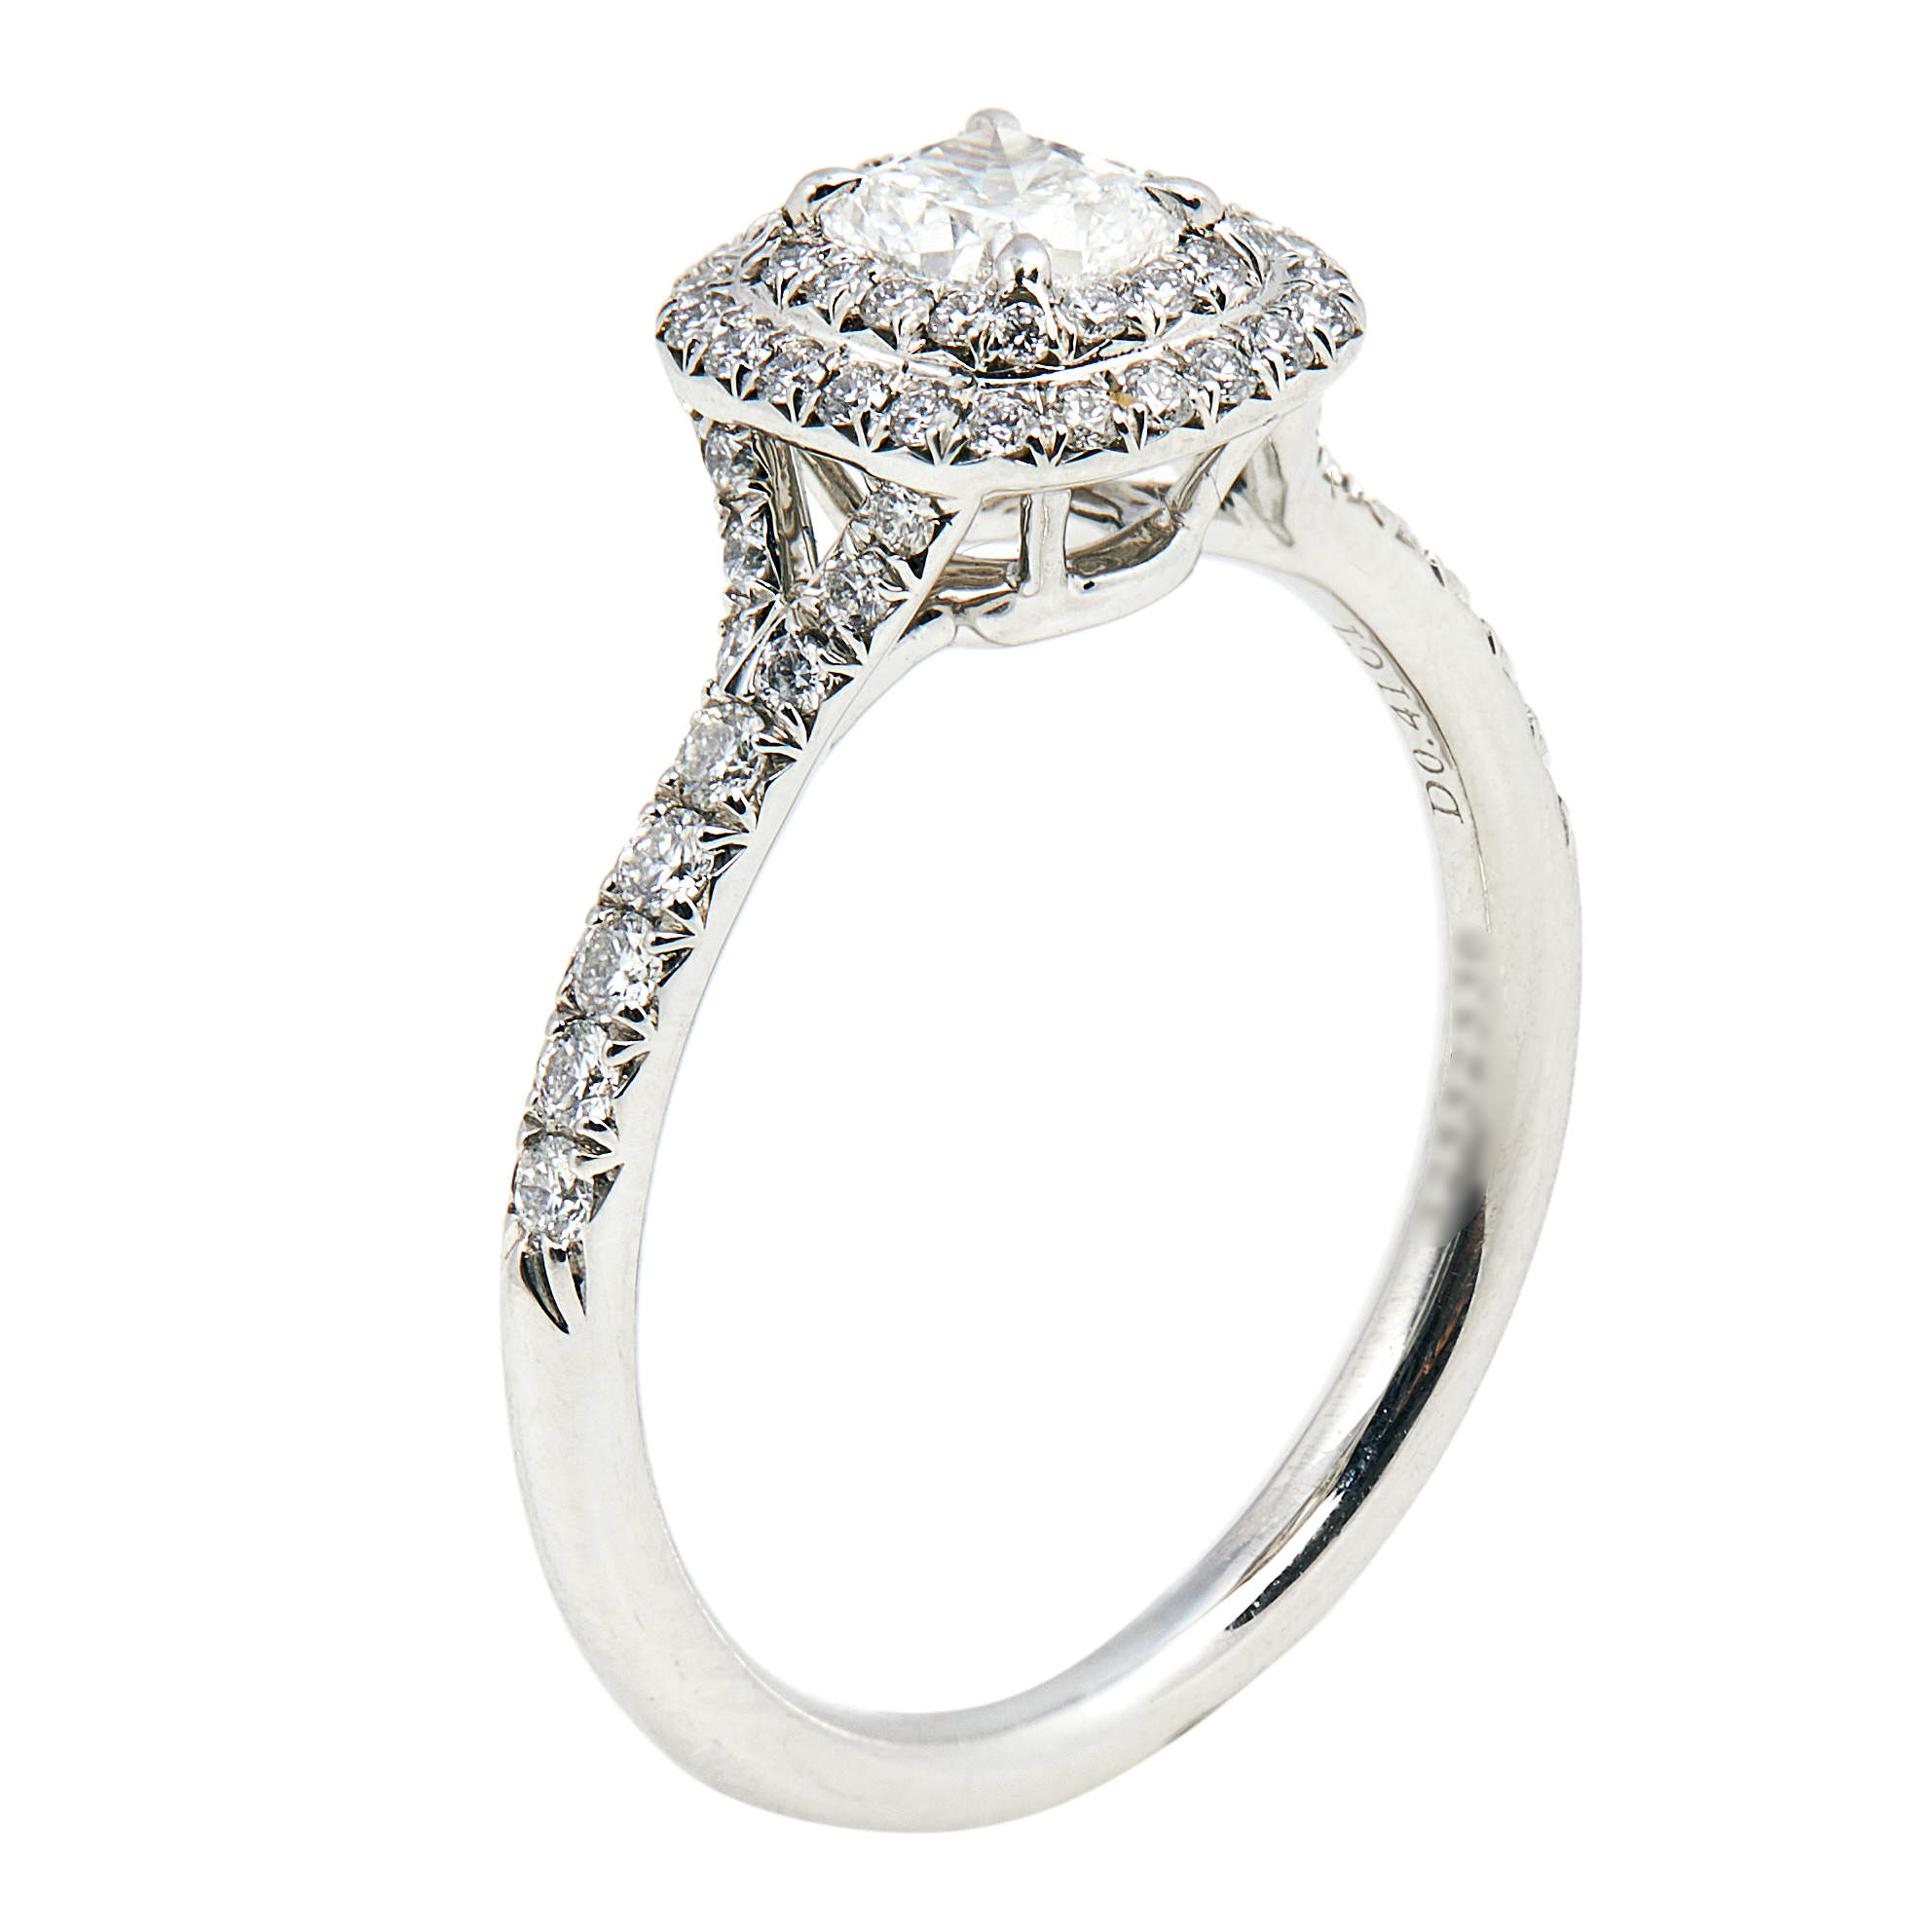 Tiffany & Co. Tiffany Solsete Cushion Cut Double Halo Diamond Engagement Ring with Diamond Platinum Band Size 51